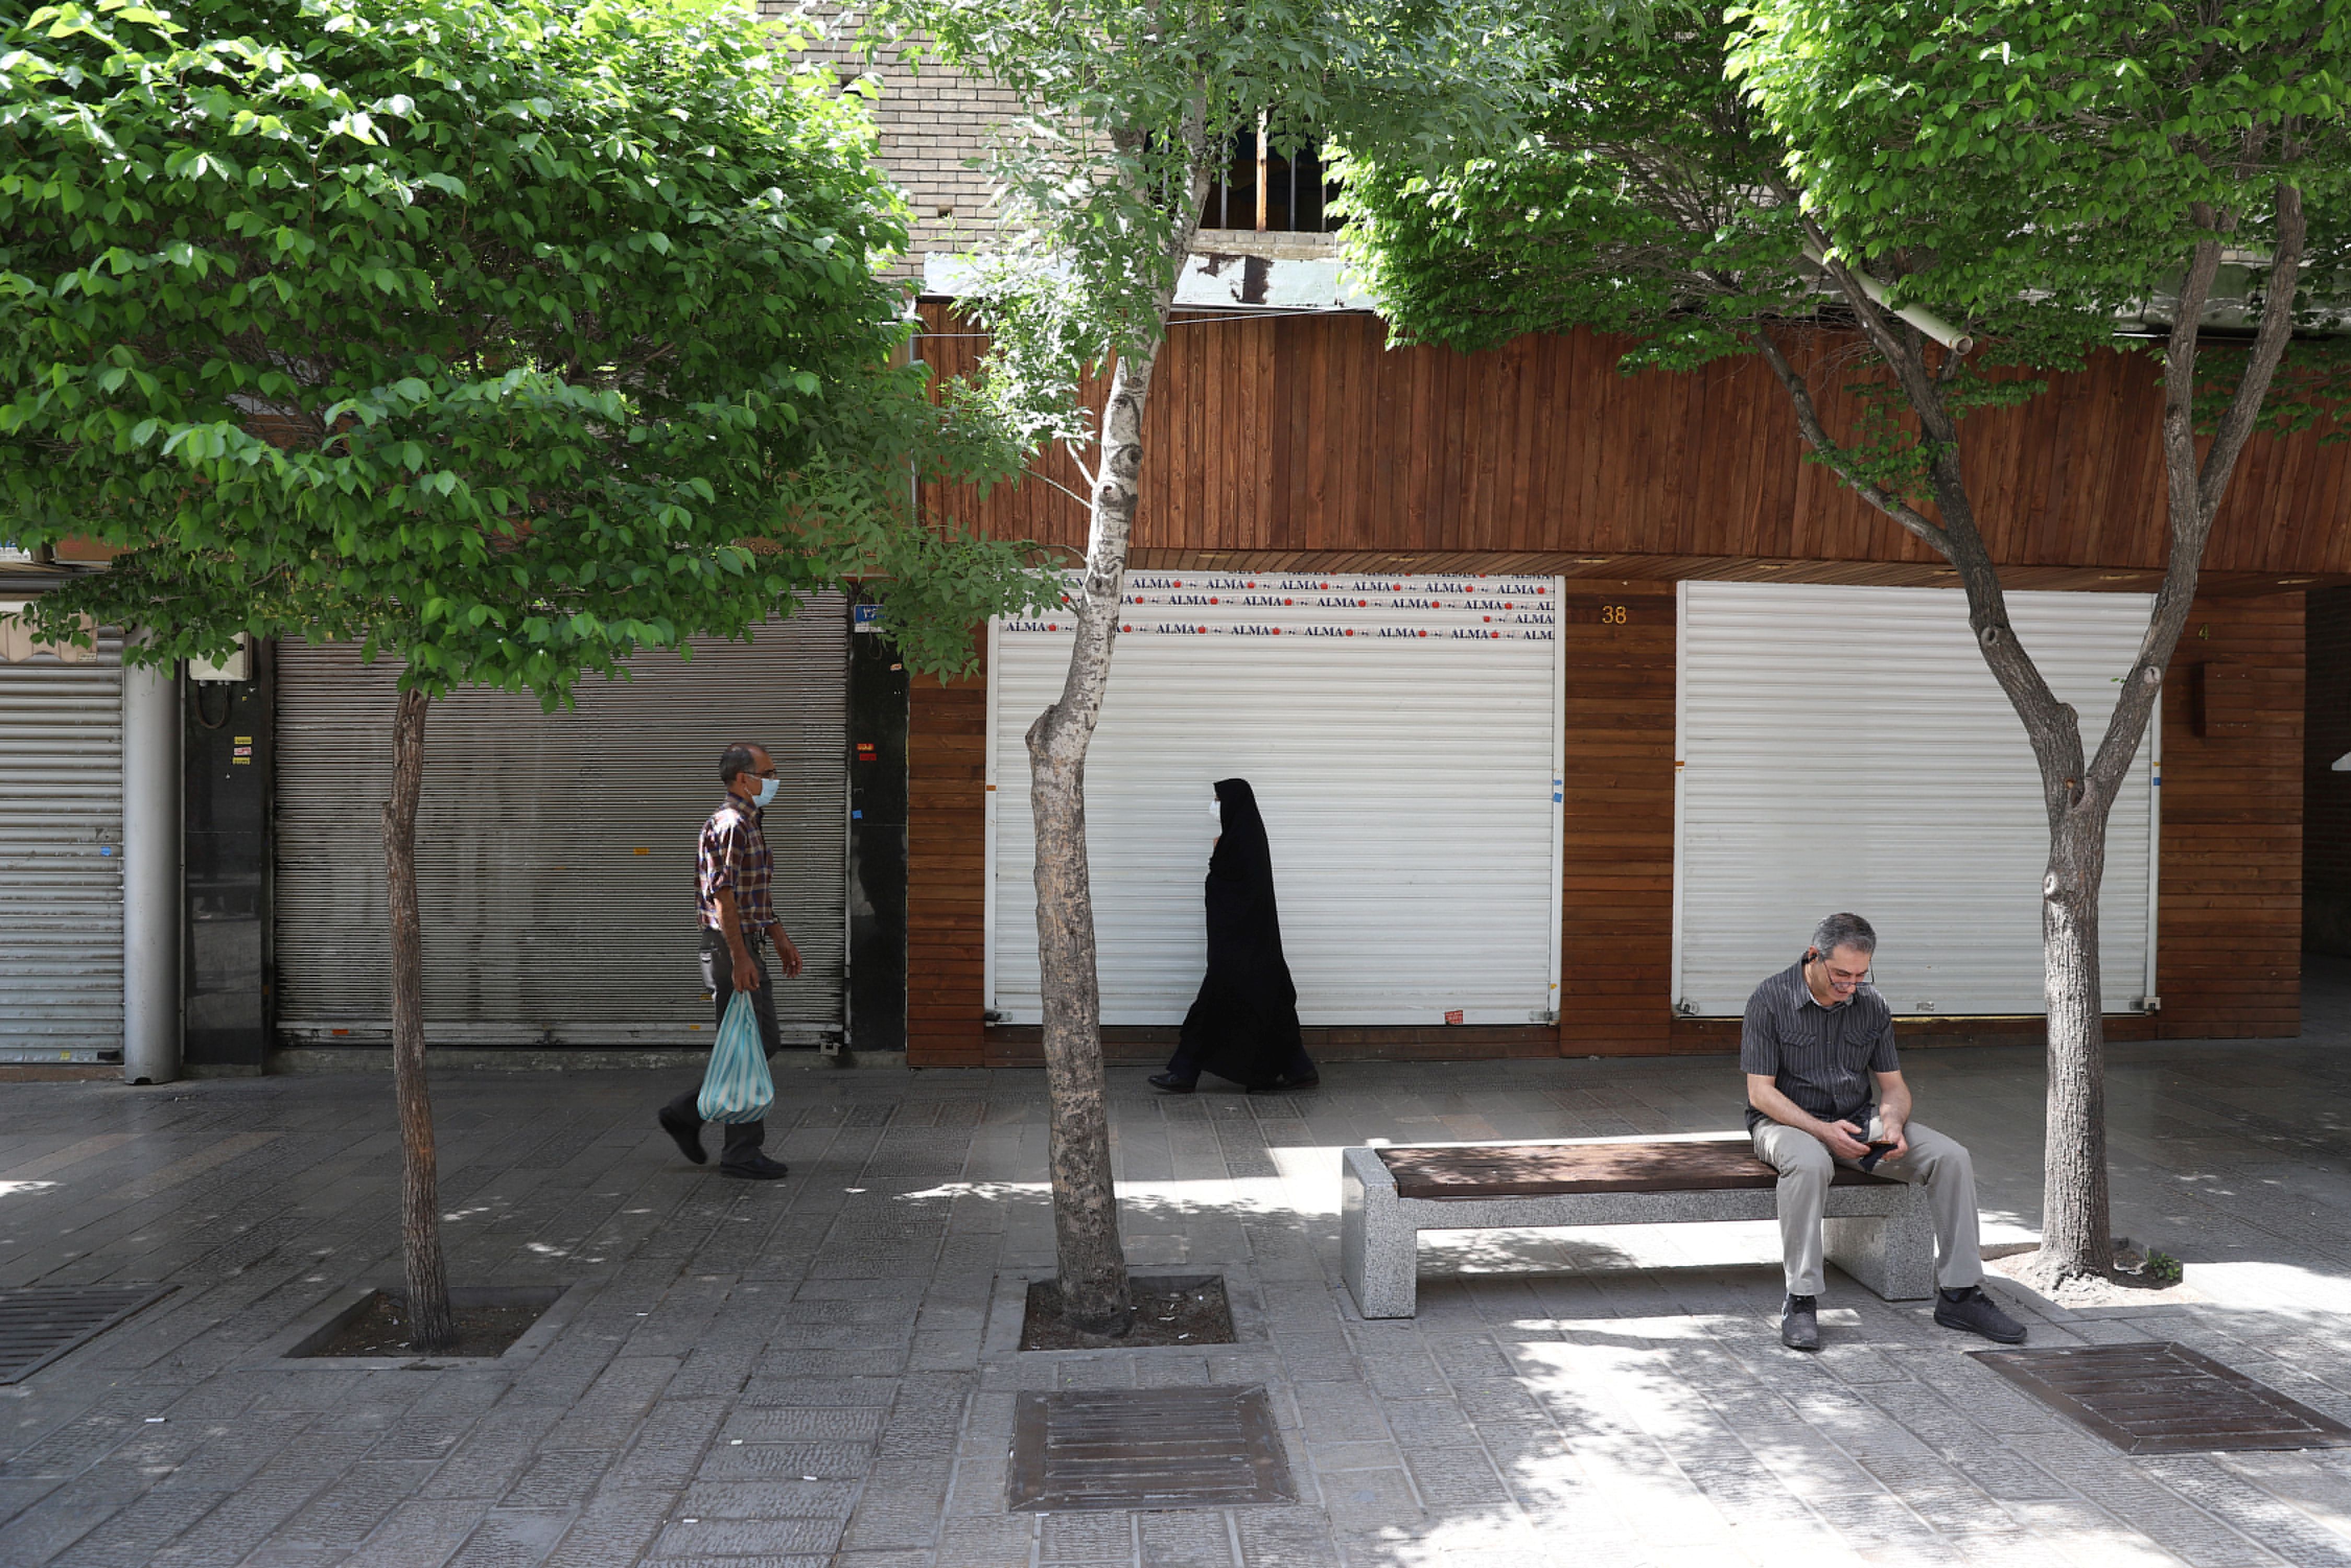 La gente camina frente a las tiendas cerradas tras el endurecimiento de las restricciones para frenar el aumento de los casos de COVID-19, en Teherán, Irán. Majid Asgaripour / WANA (Agencia de Noticias de Asia Occidental) a través de REUTERS